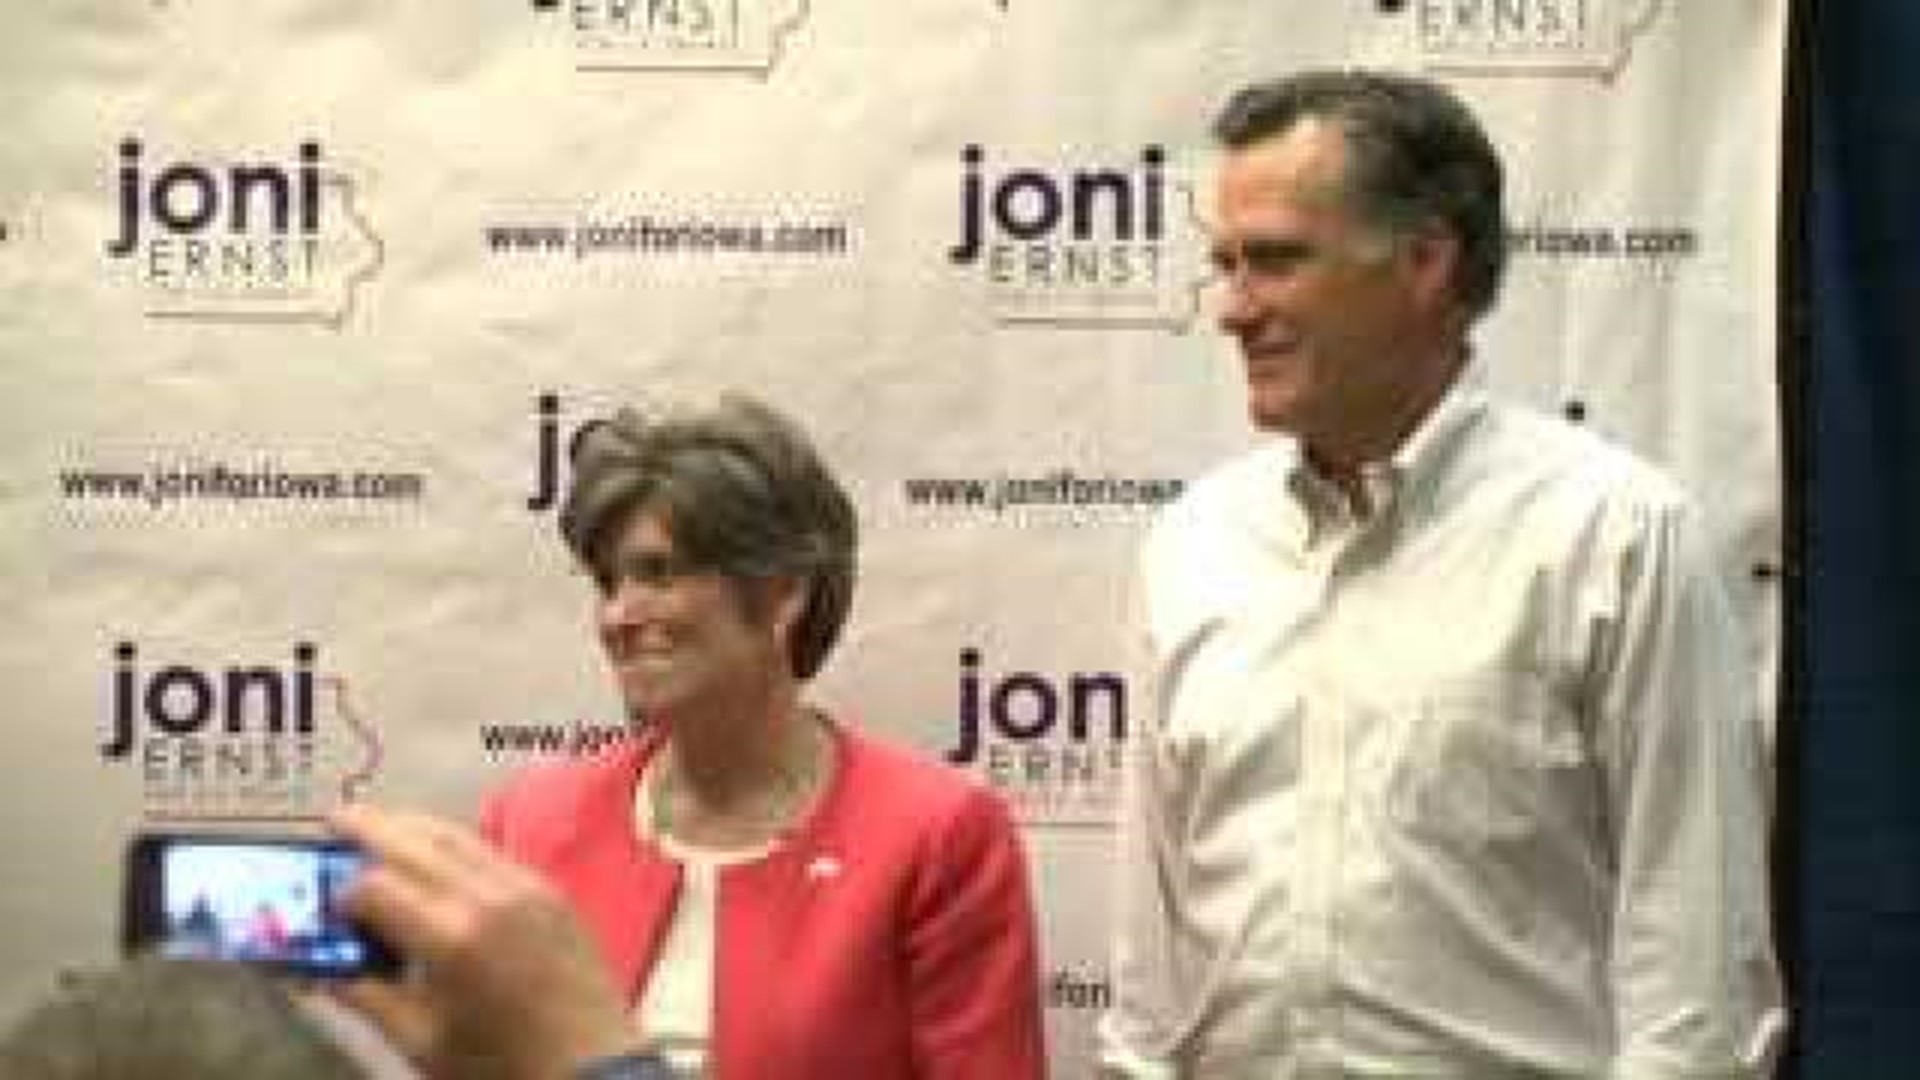 Romney returns to Iowa battleground for Joni Ernst